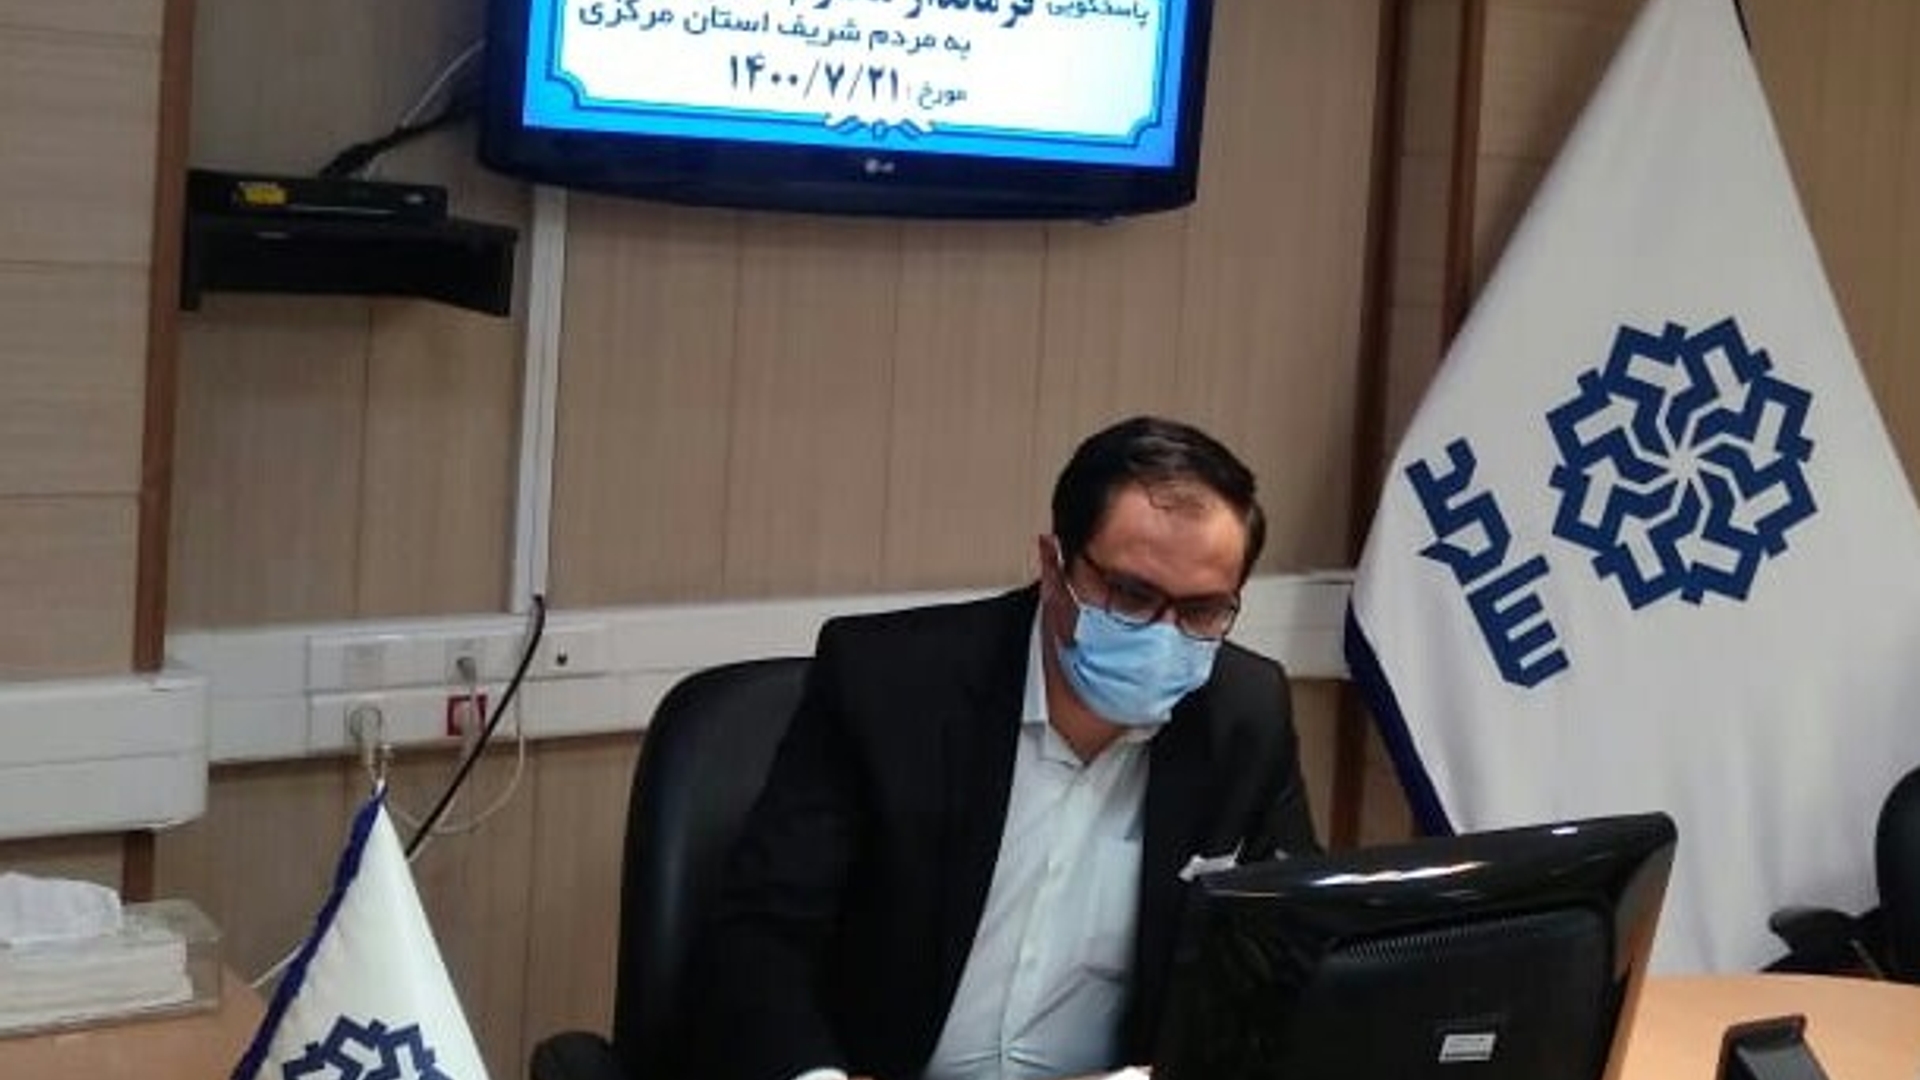 ابراهیم رستمی فرماندار شهرستان کمیجان با حضور در مرکز سامد به سوالات و مشکلات شهروندان پاسخ دادند.